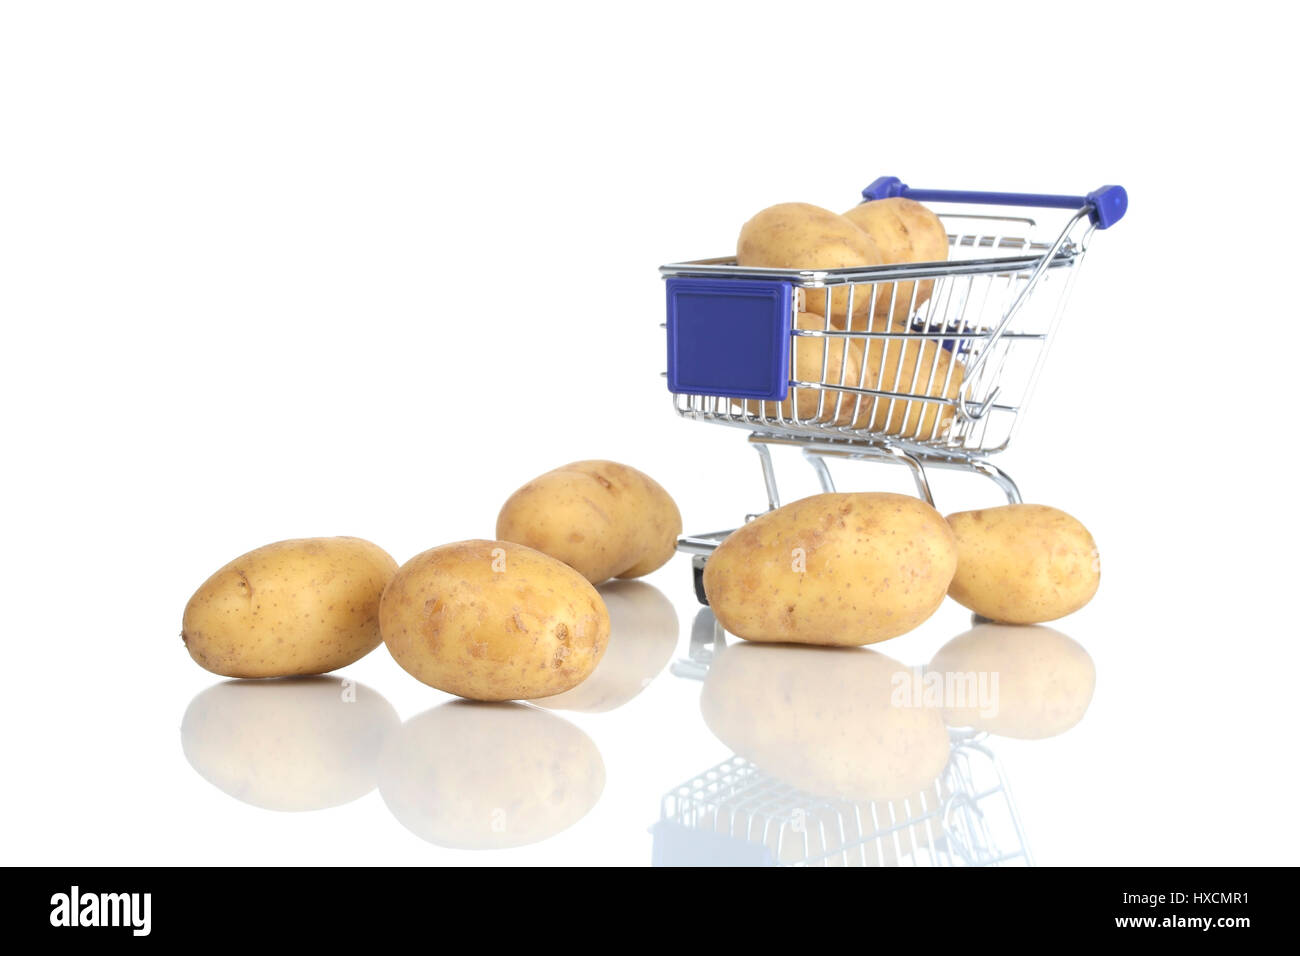 Shopping carts and potato, Einkaufswagen und Kartoffel Stock Photo